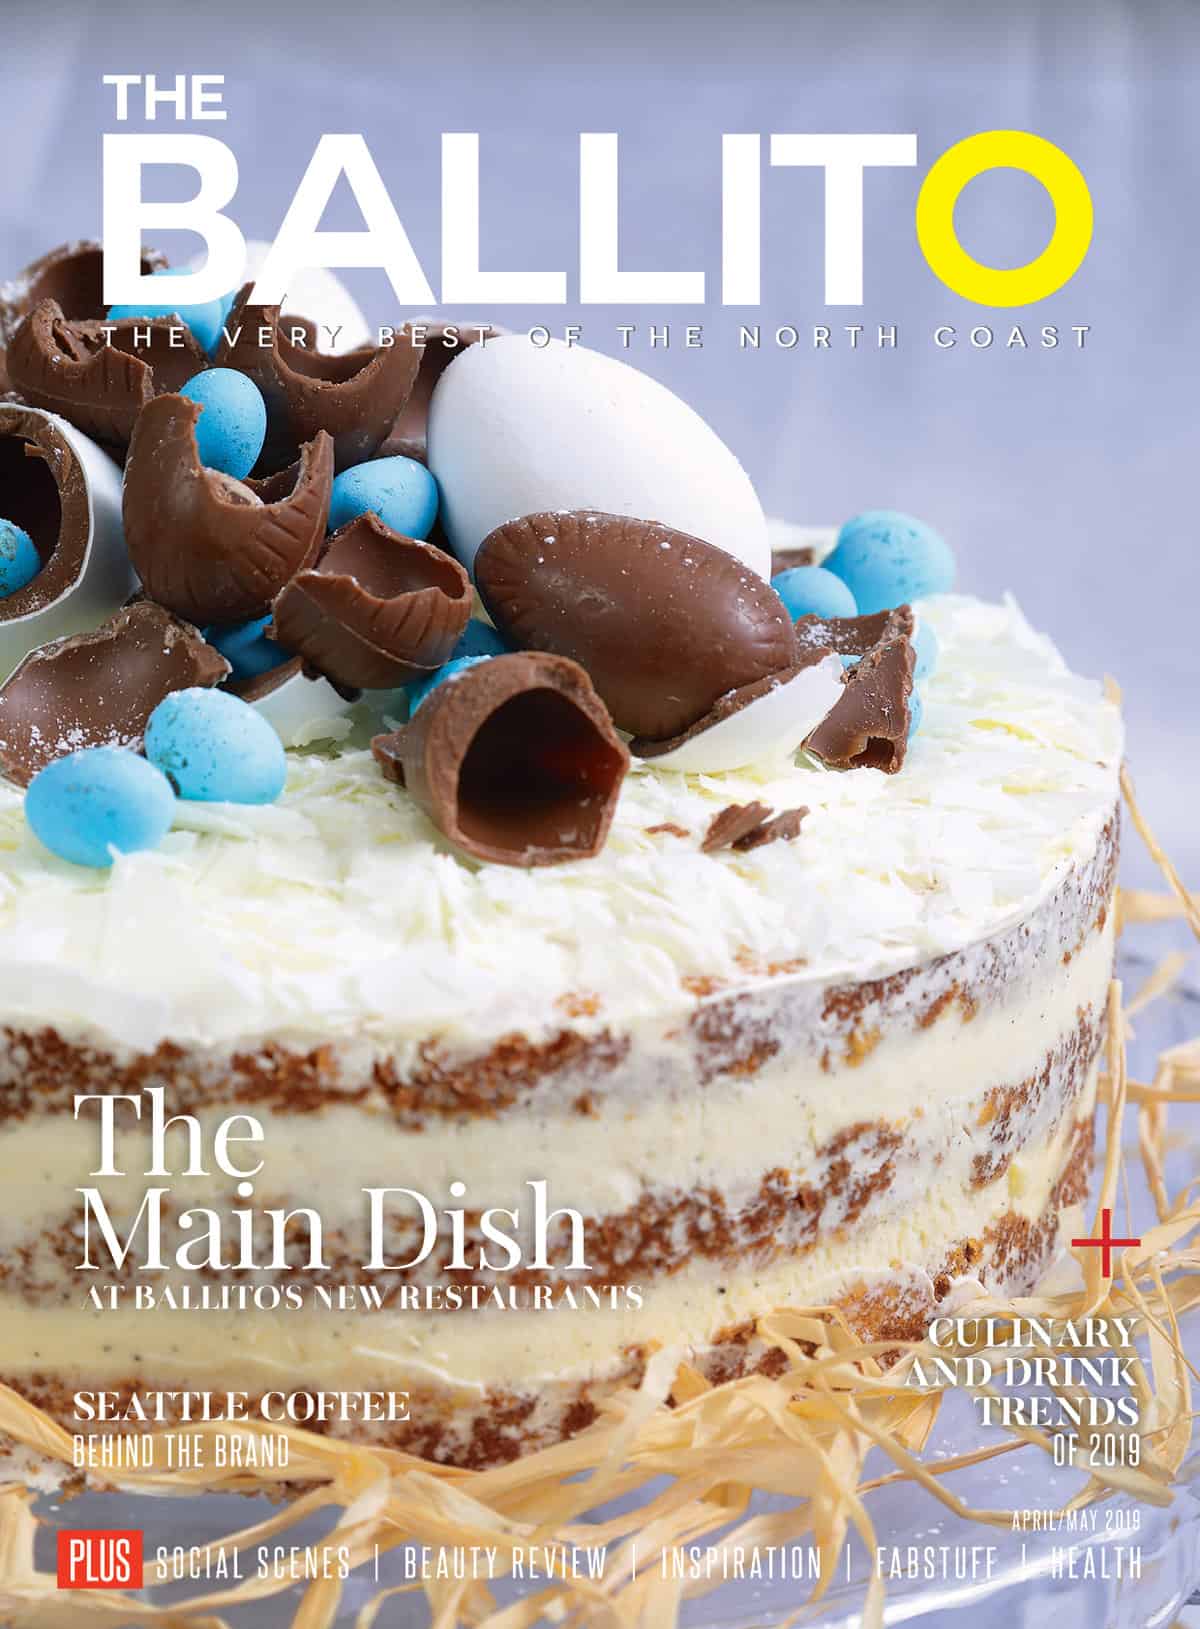 https://www.theballitomagazine.co.za/wp-content/uploads/The-Ballito-Magazine.jpg